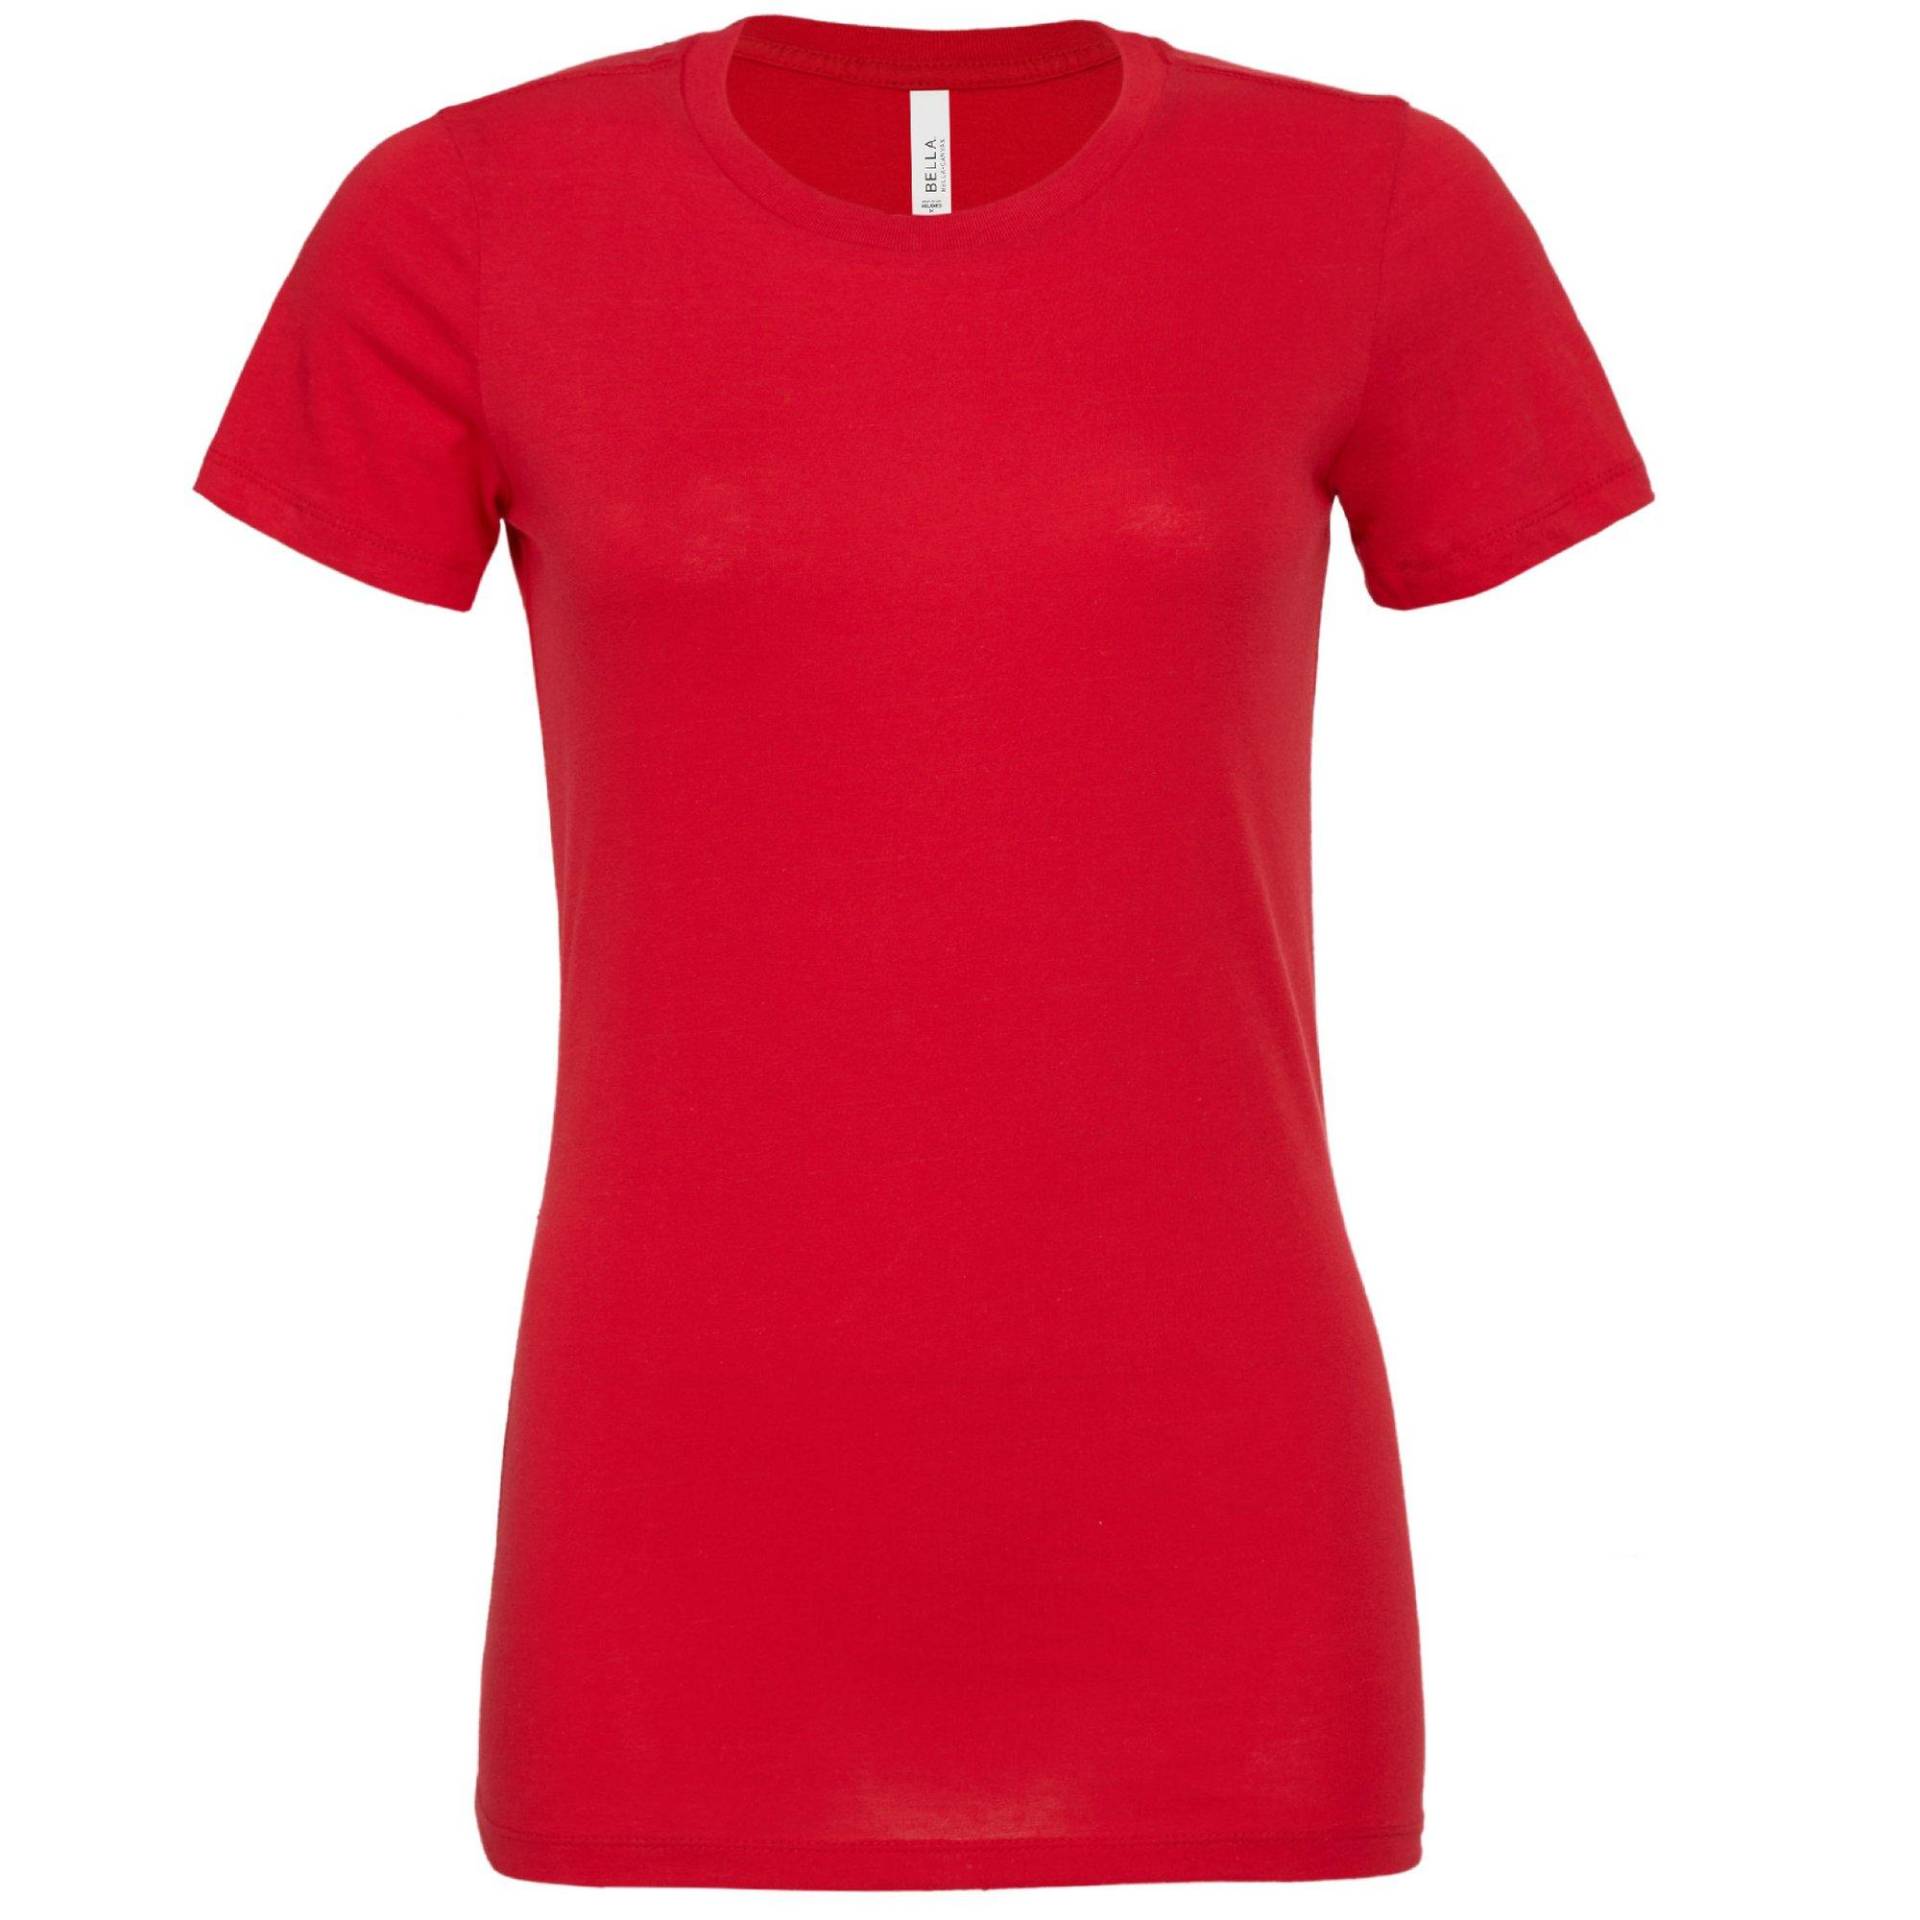 Tshirt Jersey Kurzarm Damen Rot Bunt S von Bella + Canvas